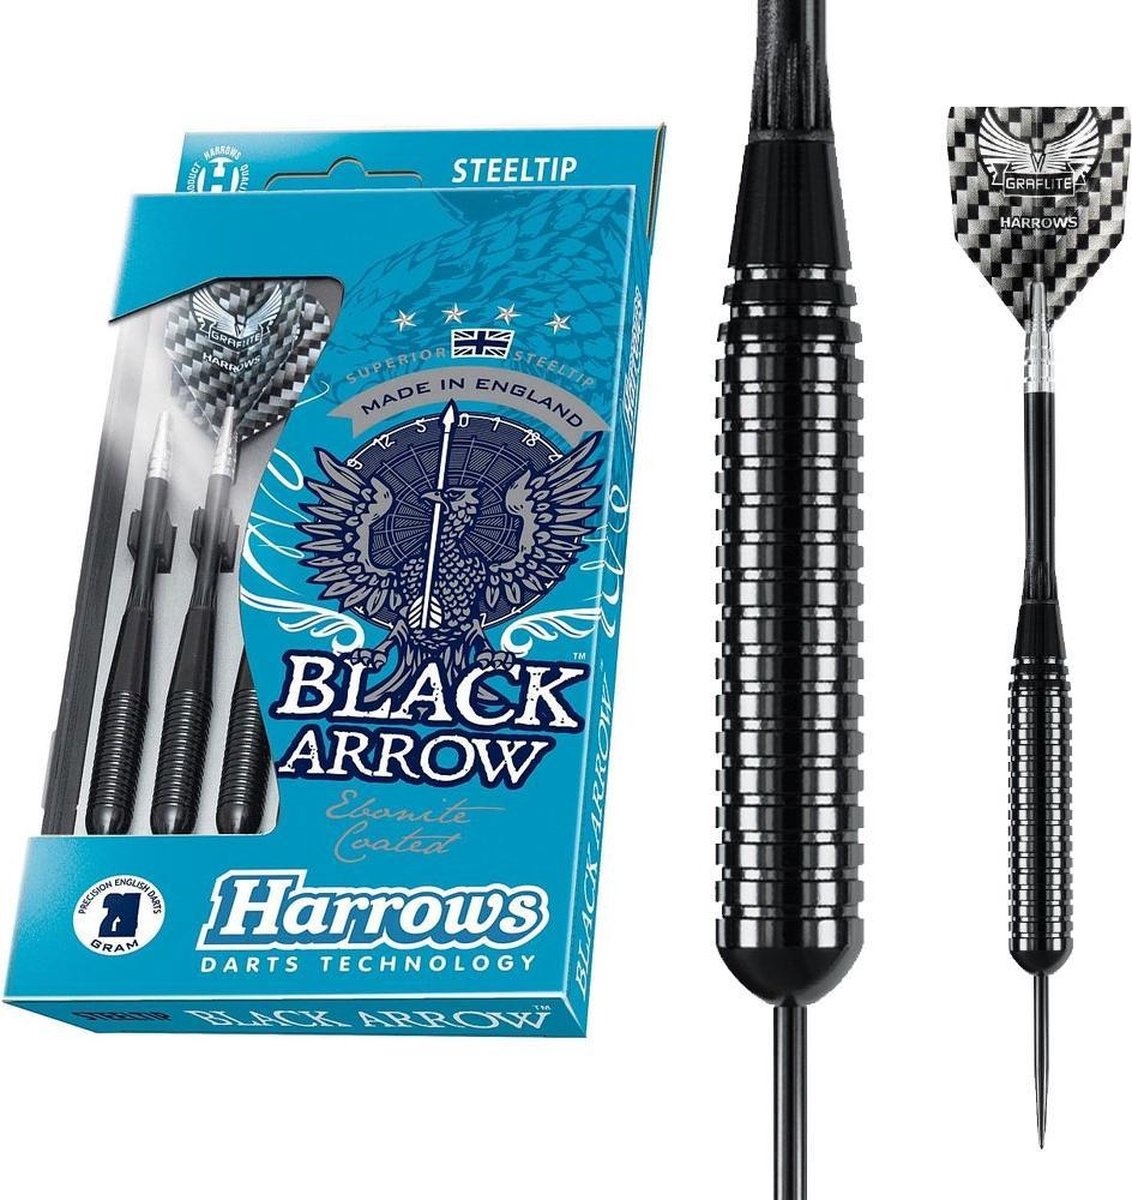 Harrows Darts Harrows Black Arrow darts